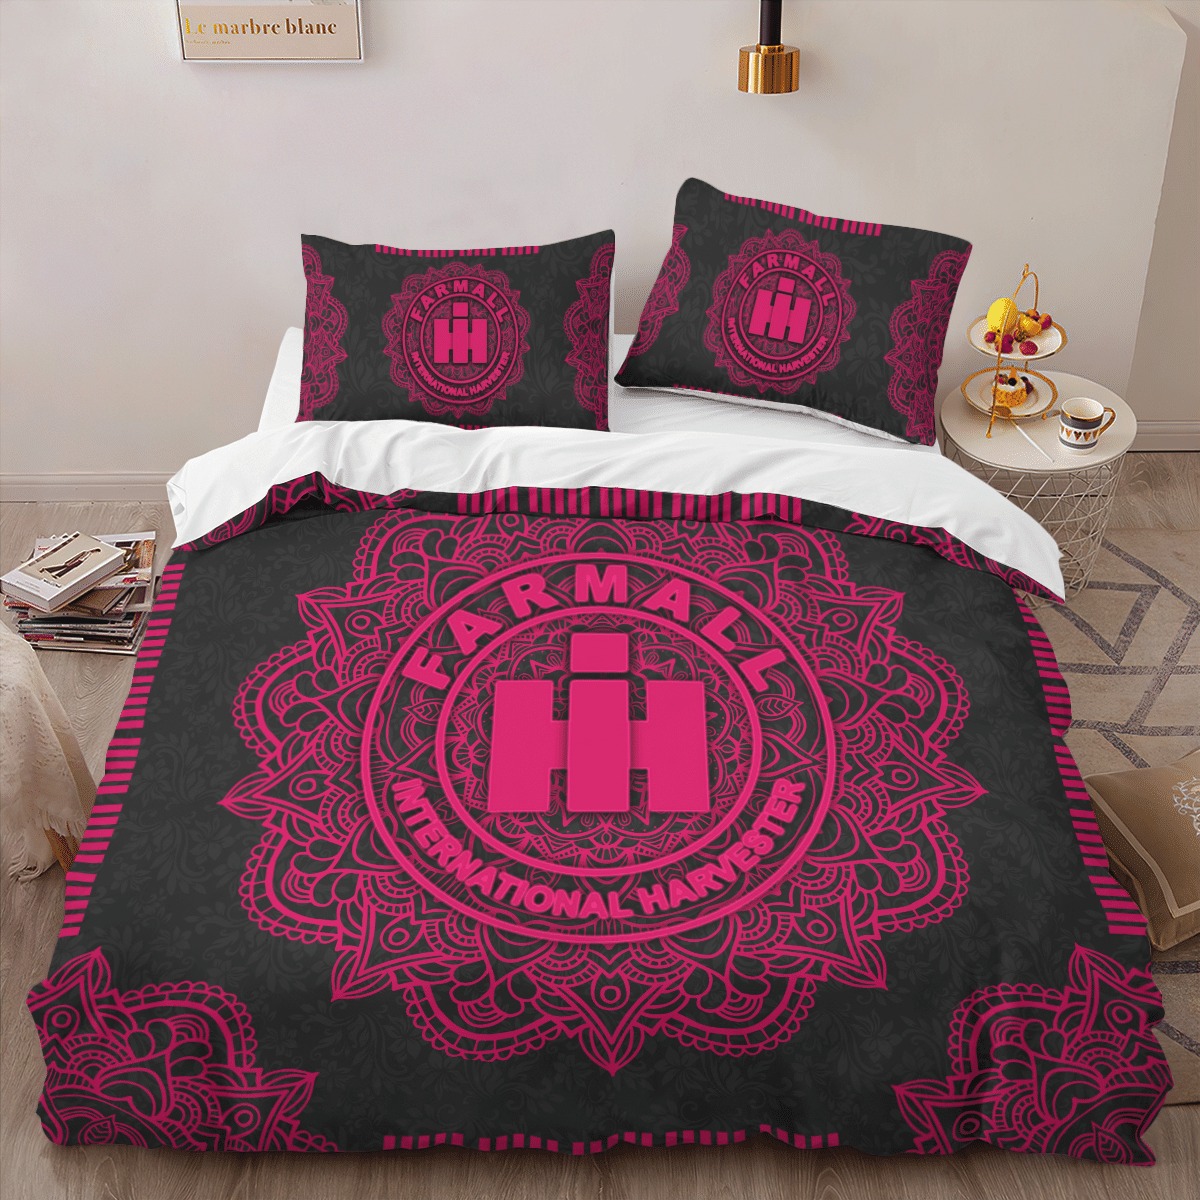 Farmall International Harvester IH Mandala quilt bedding set 3